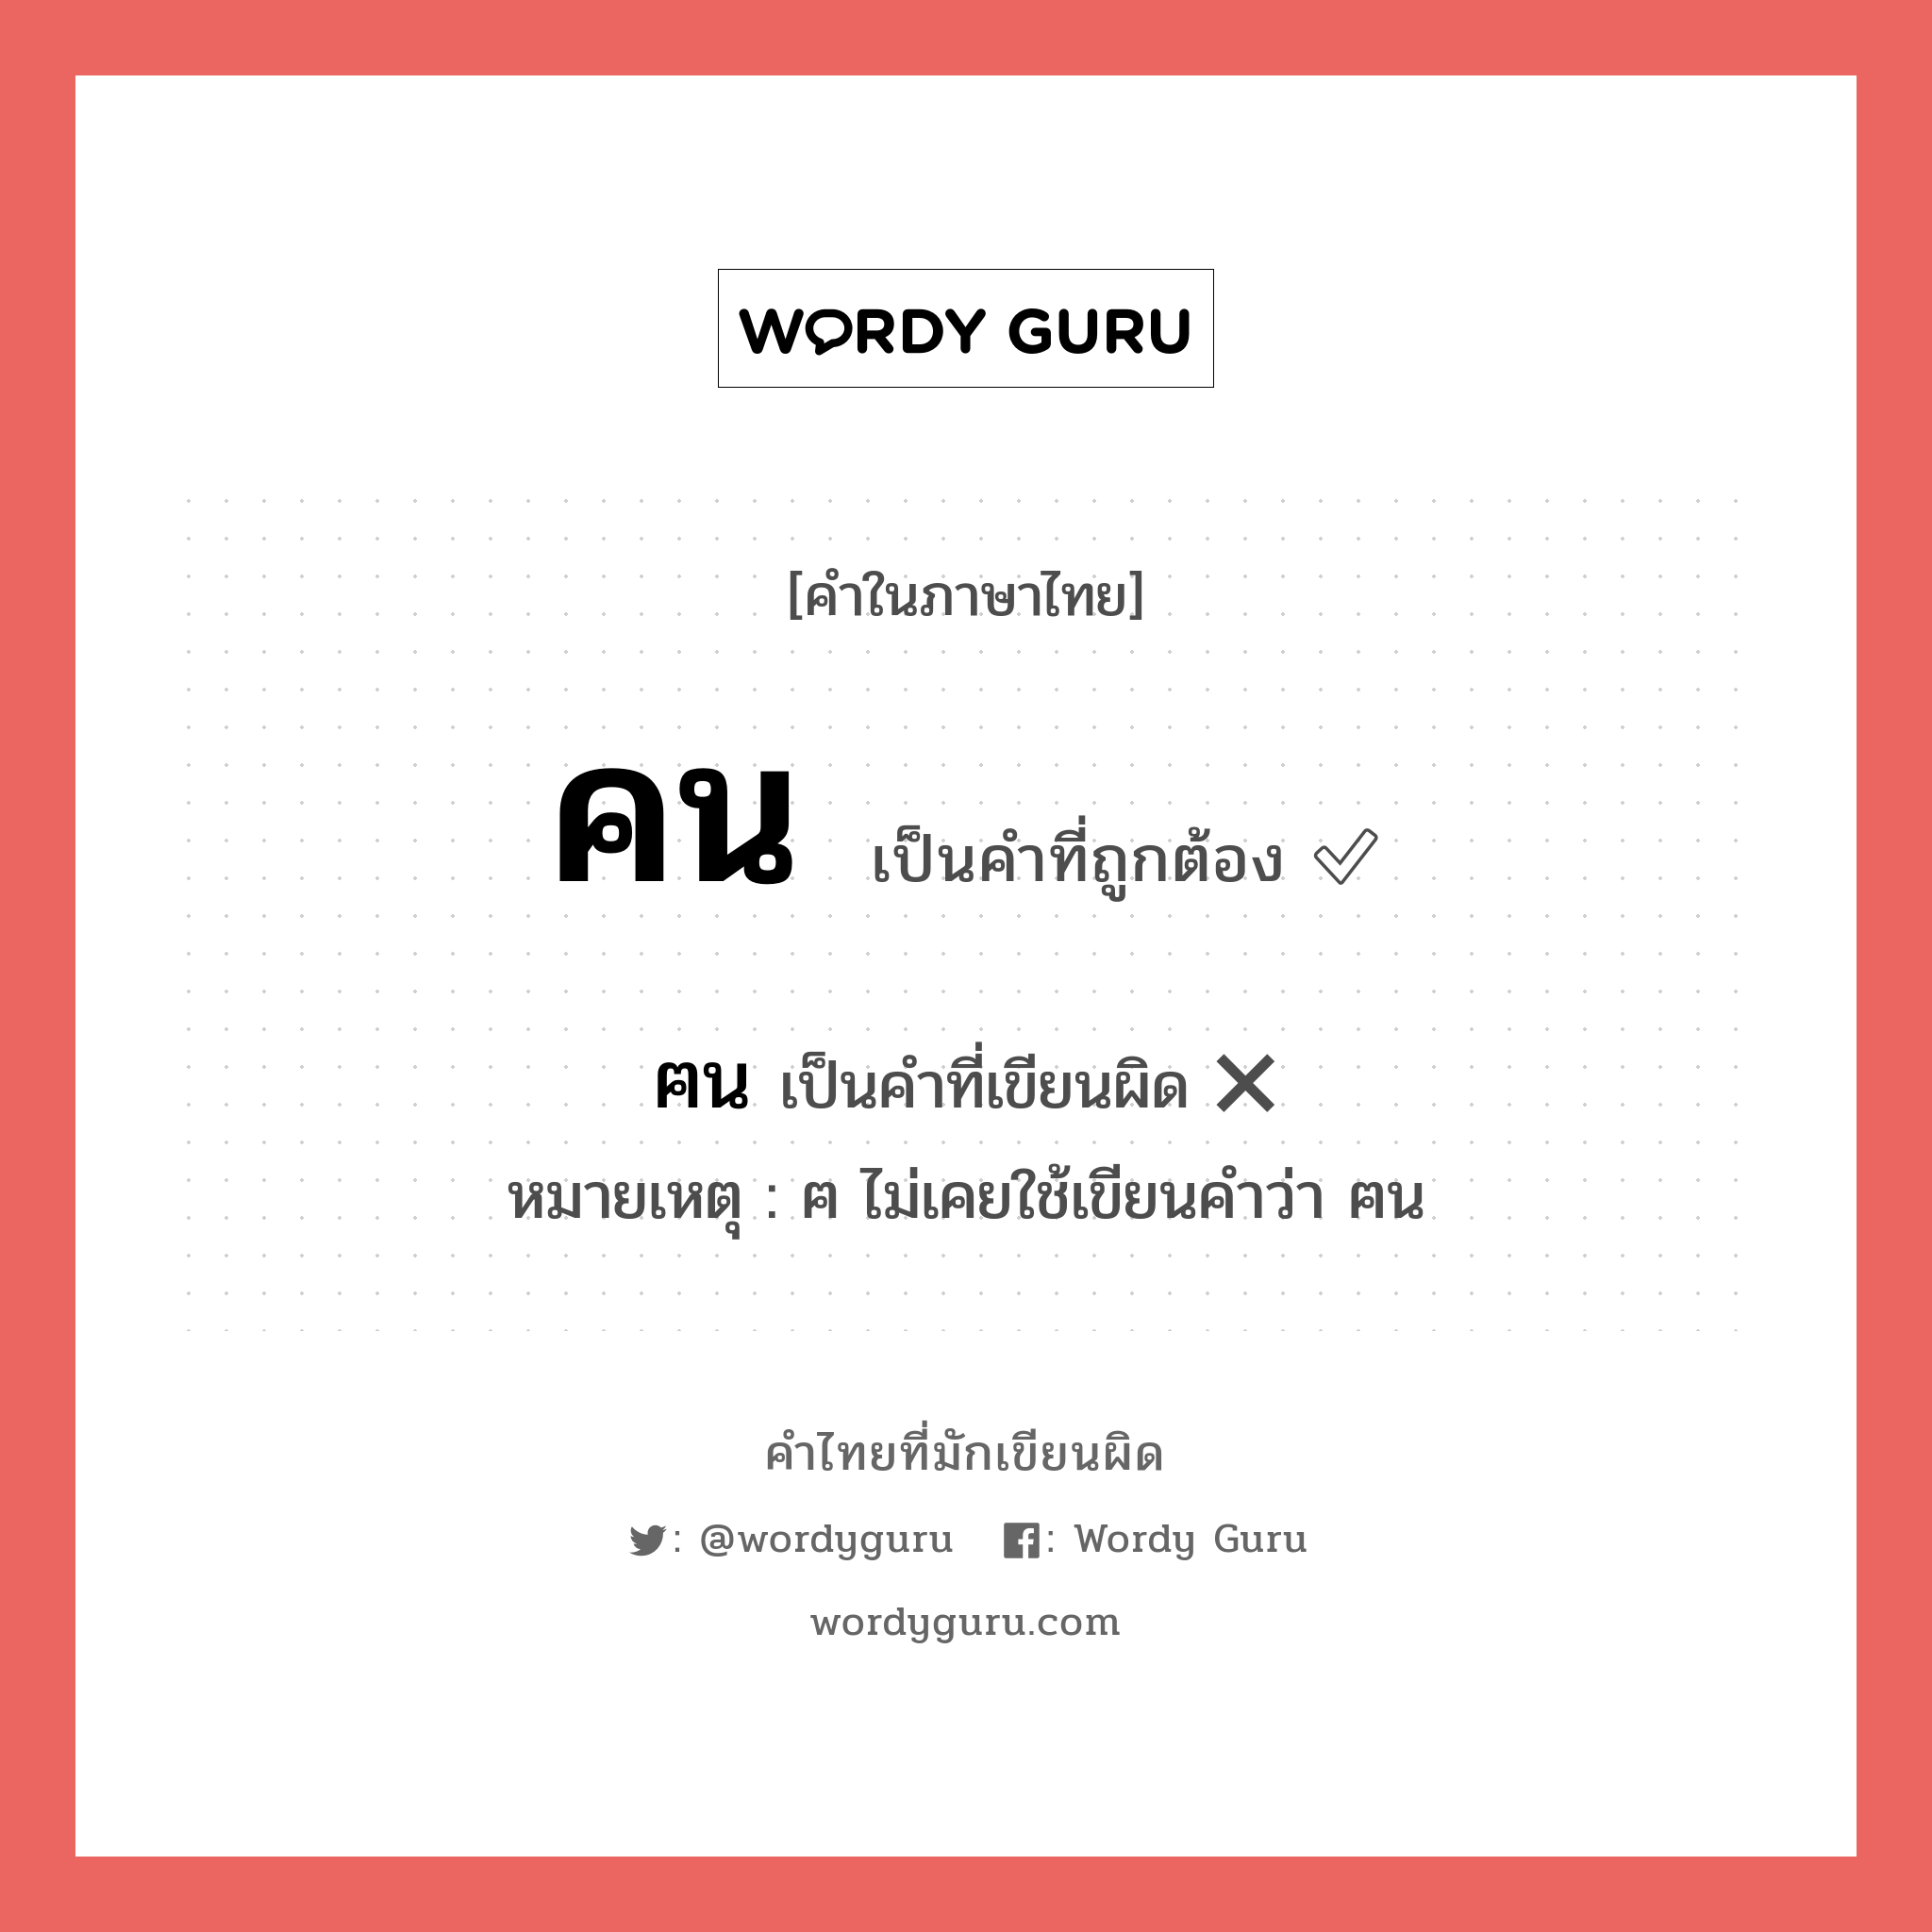 ฅน หรือ คน คำไหนเขียนถูก?, คำในภาษาไทยที่มักเขียนผิด ฅน คำที่ผิด ❌ คน หมายเหตุ ฅ ไม่เคยใช้เขียนคำว่า ฅน